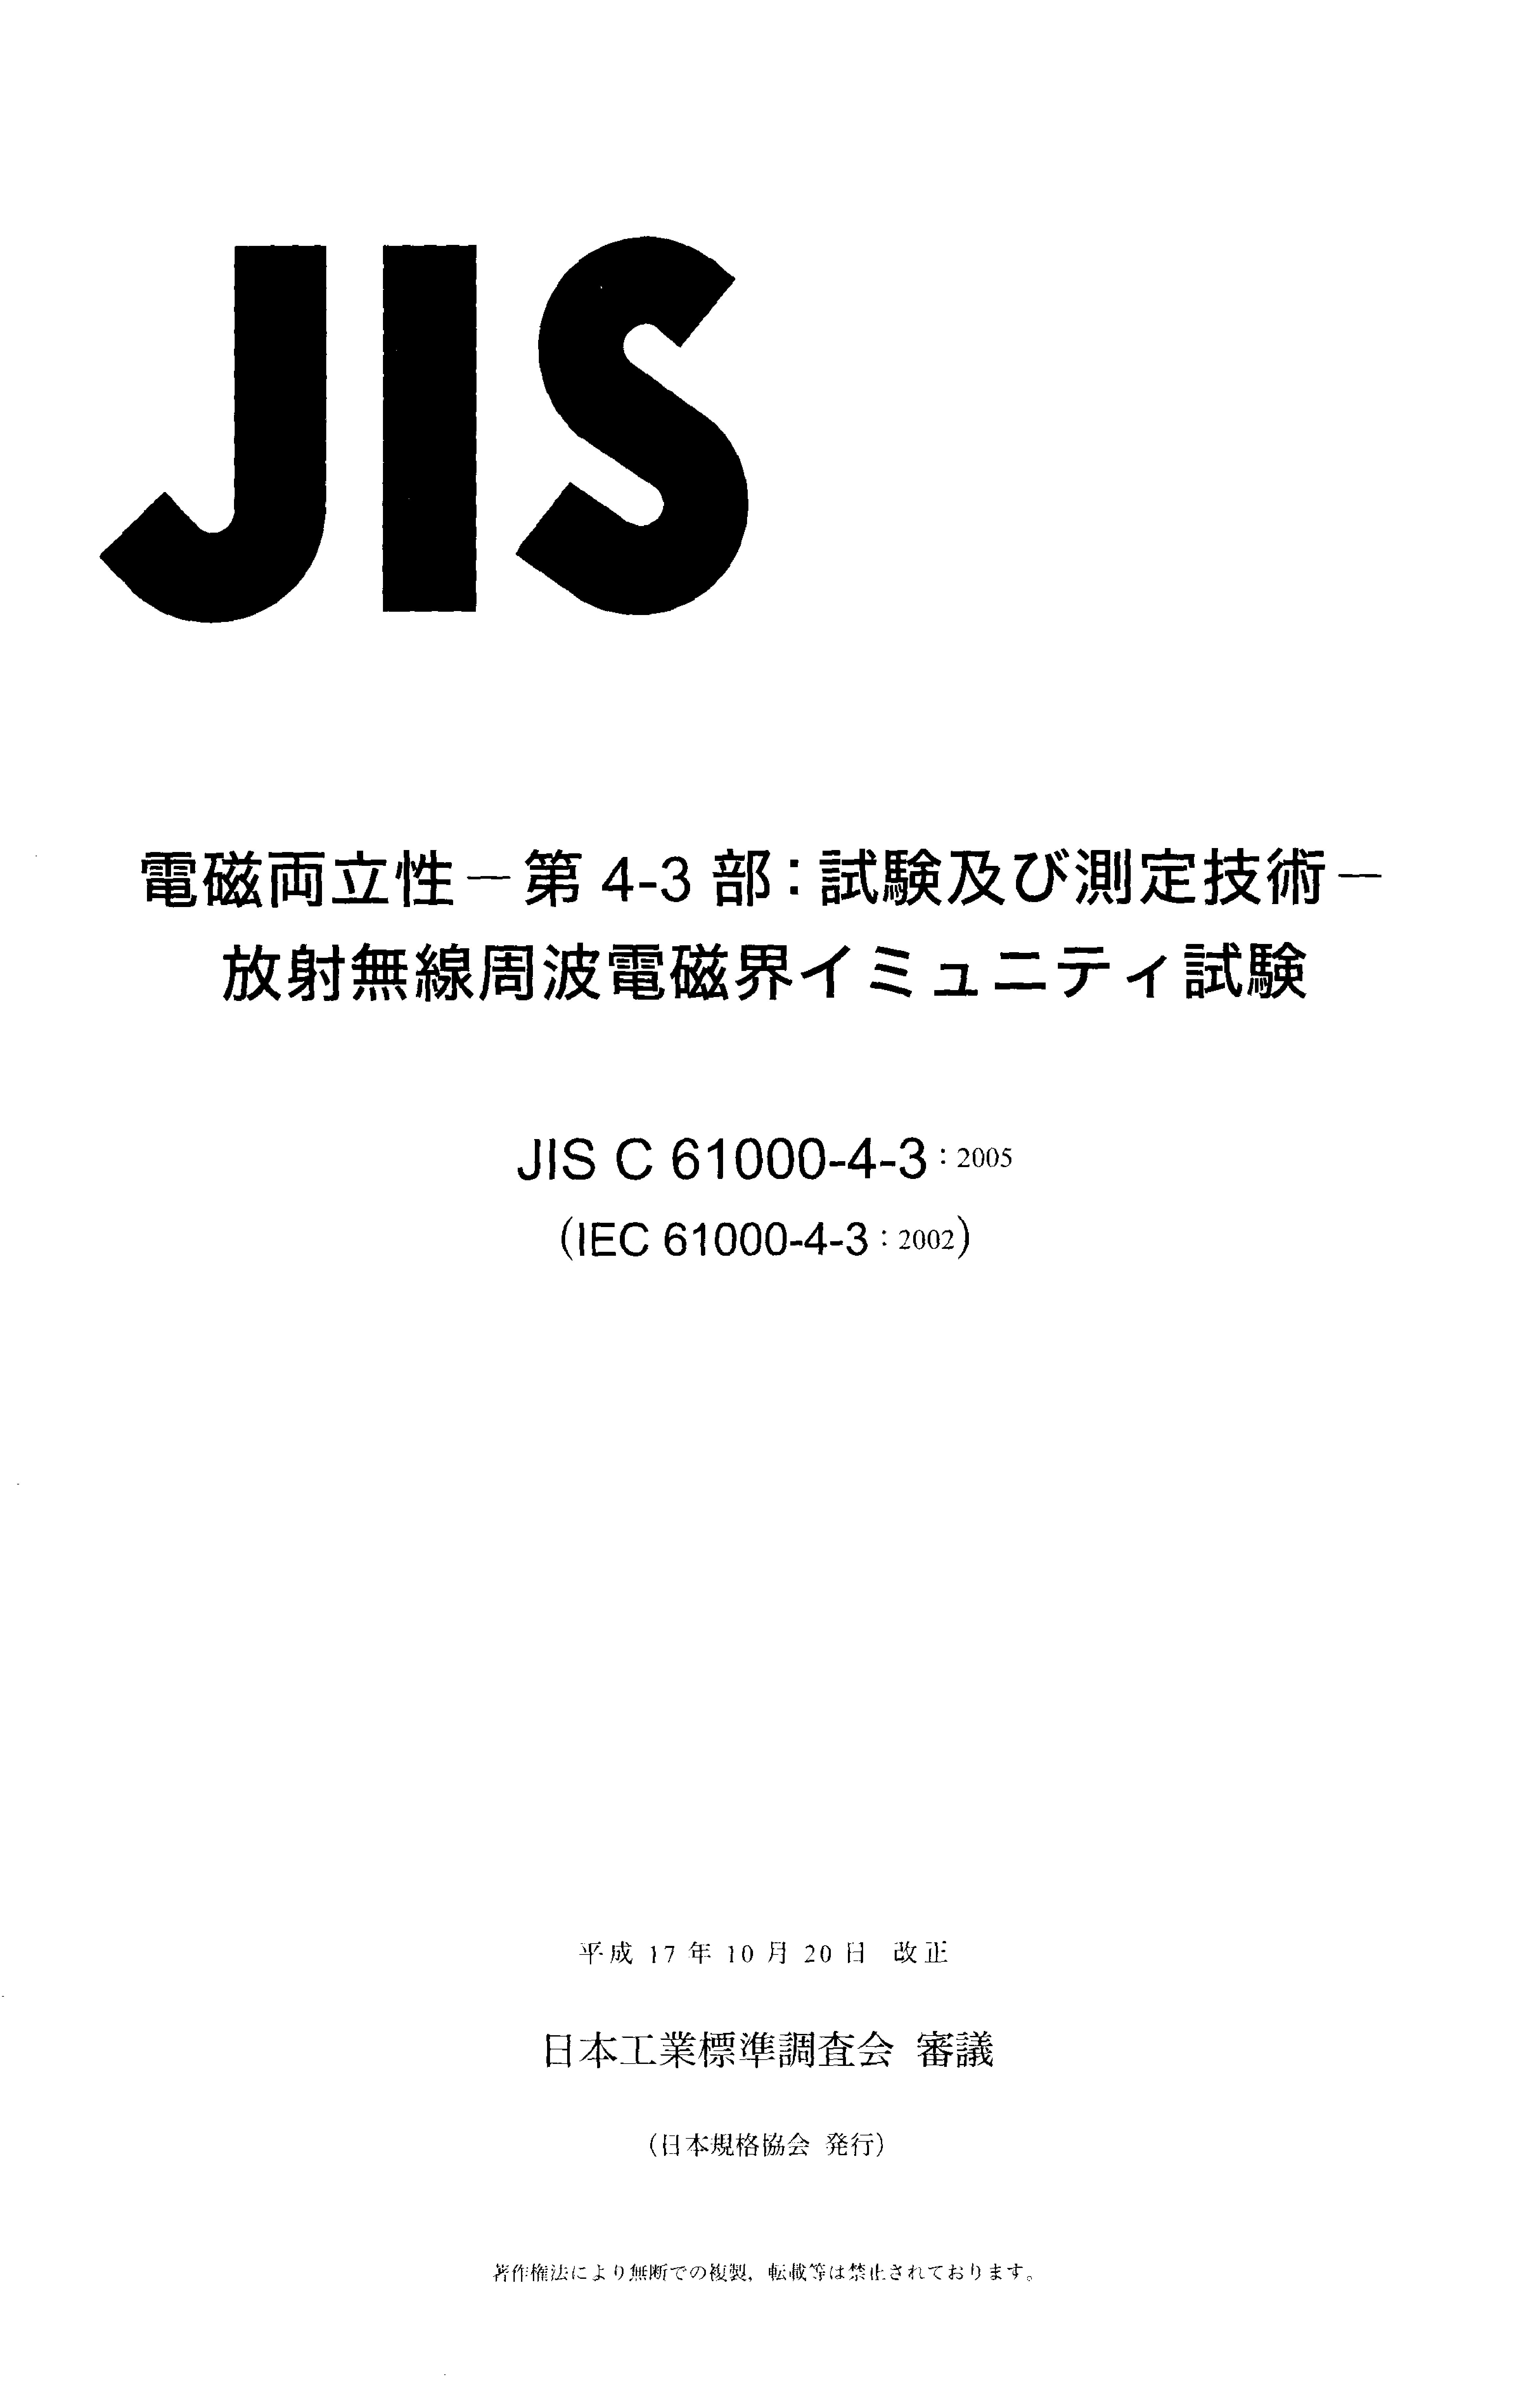 JIS C 61000-4-3:2005封面图